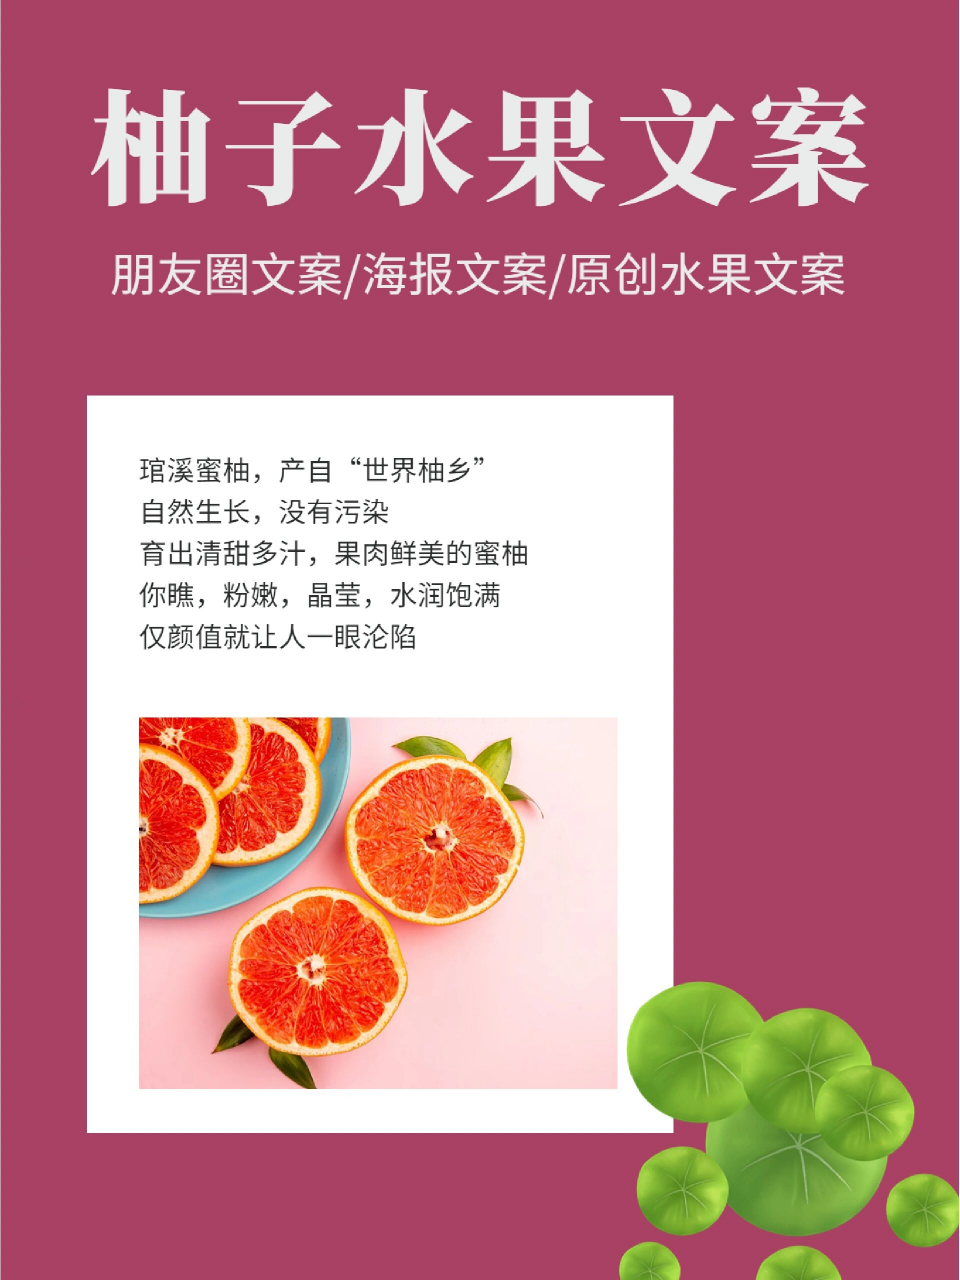 三红蜜柚文案图片